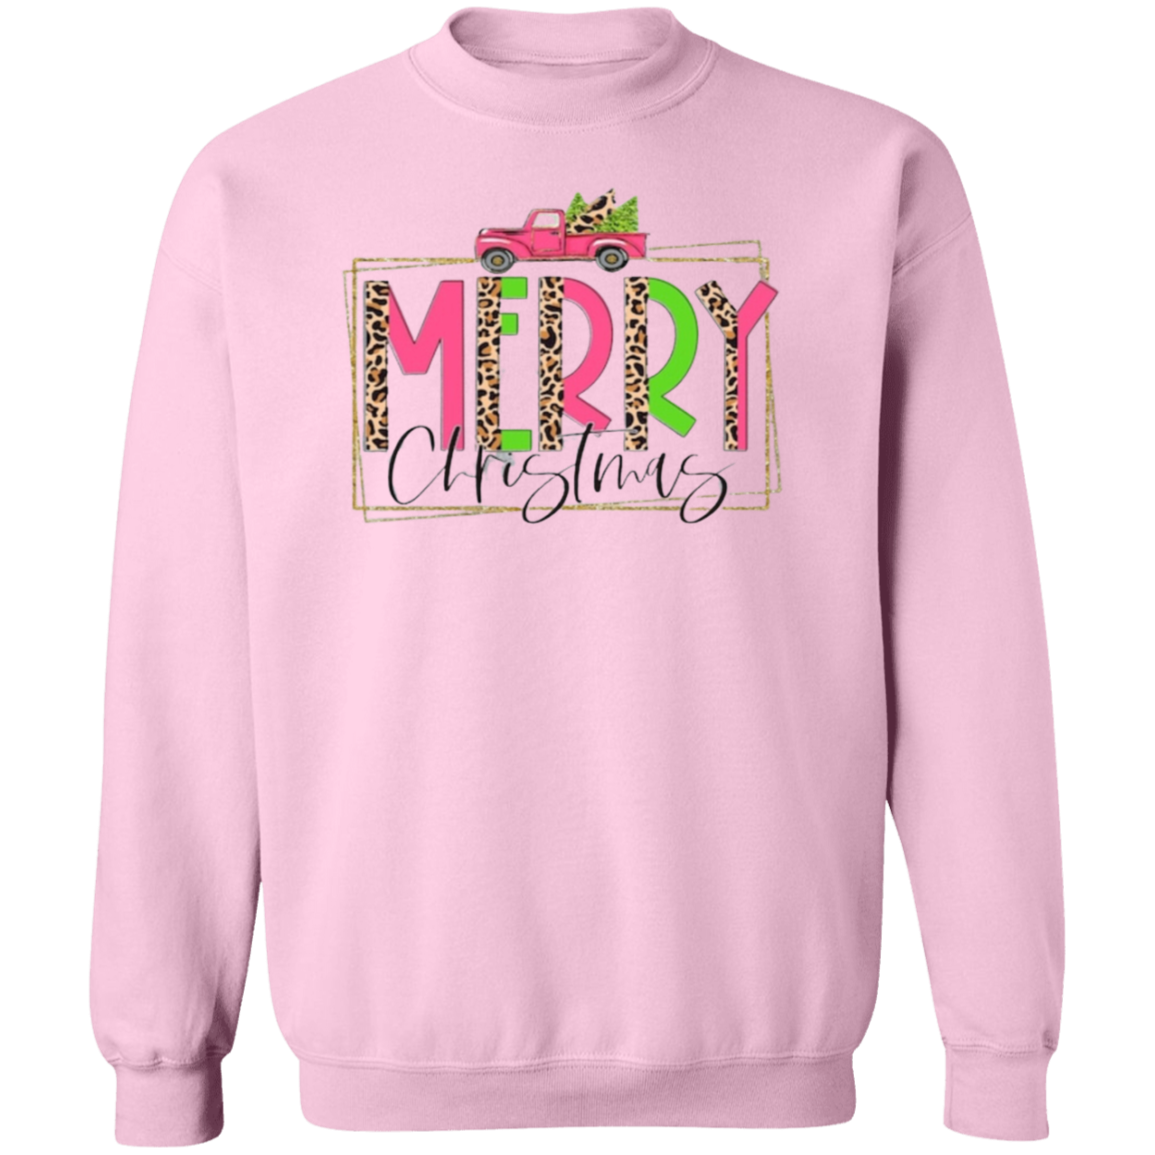 Merry Christmas Adult Sweatshirt